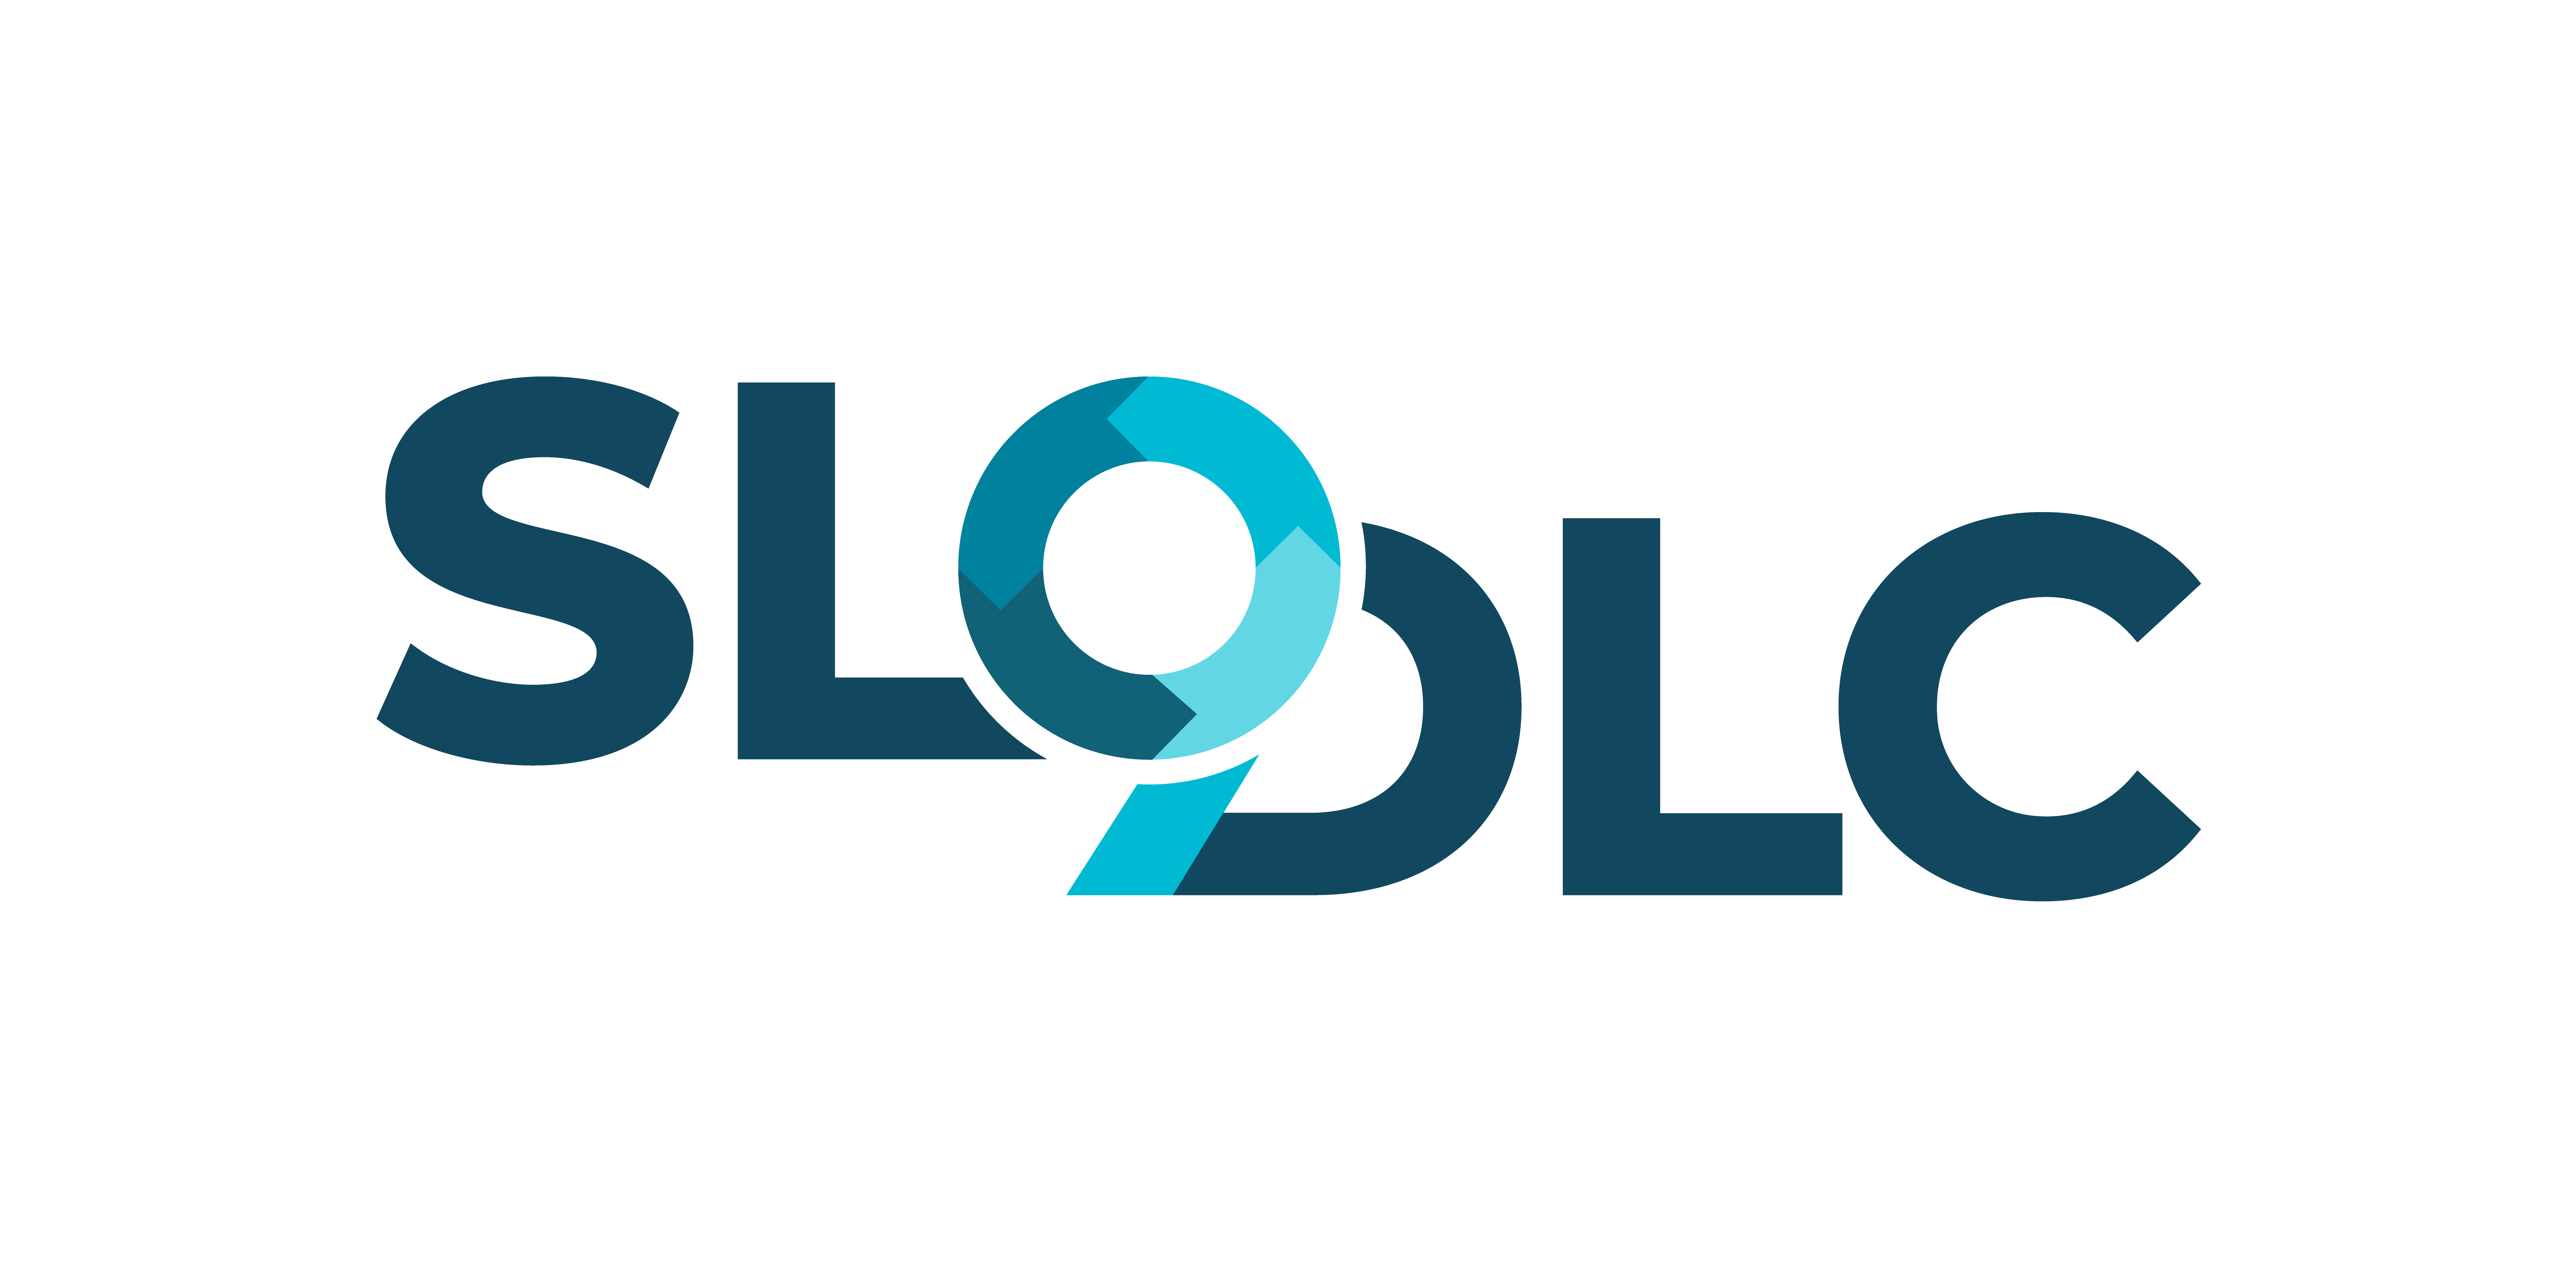 SLODLC_logo_pack_full_color